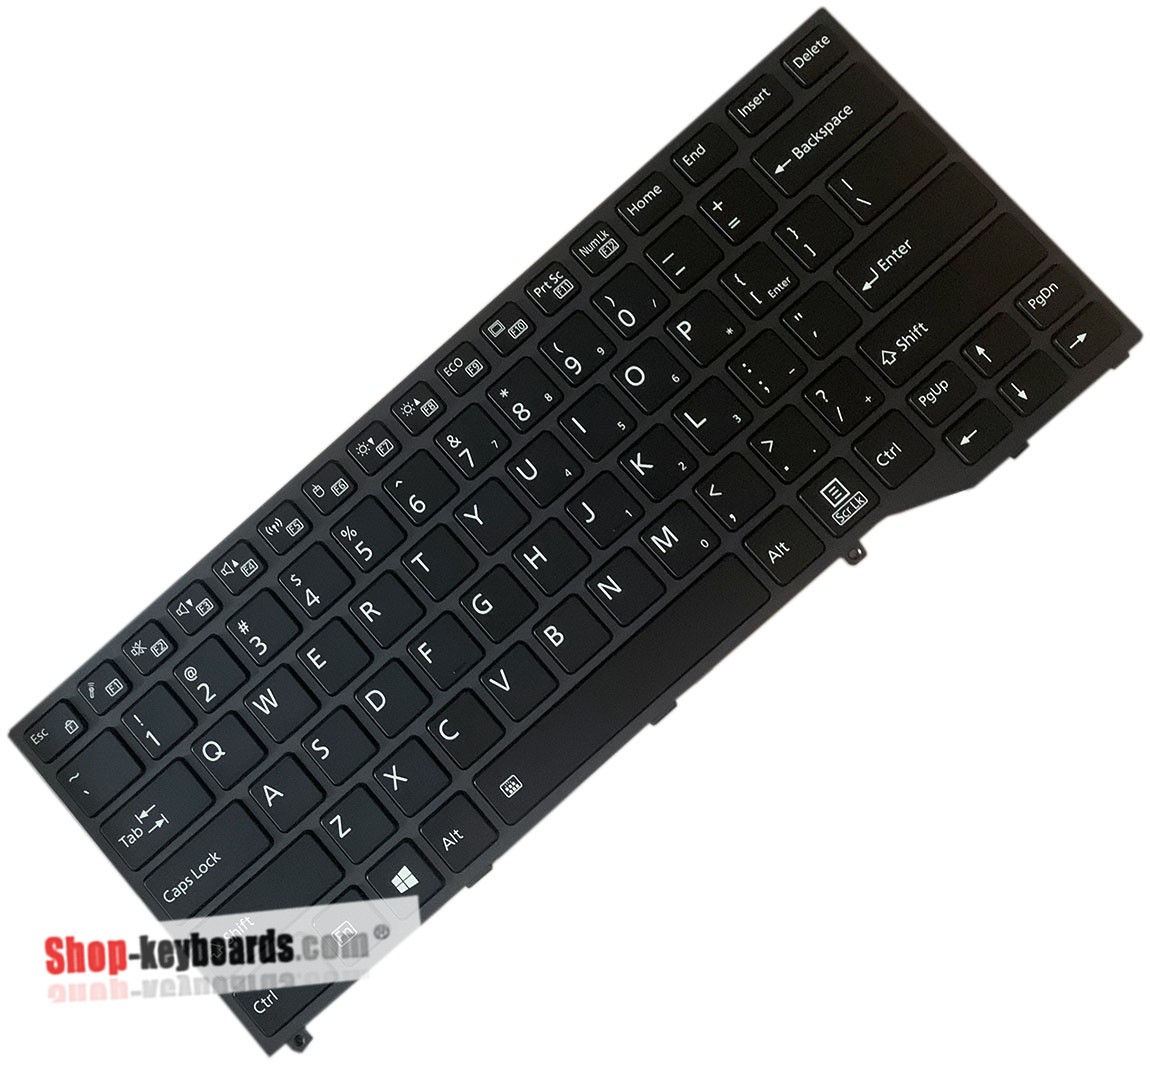 Fujitsu FIM16J60J0JD854 Keyboard replacement